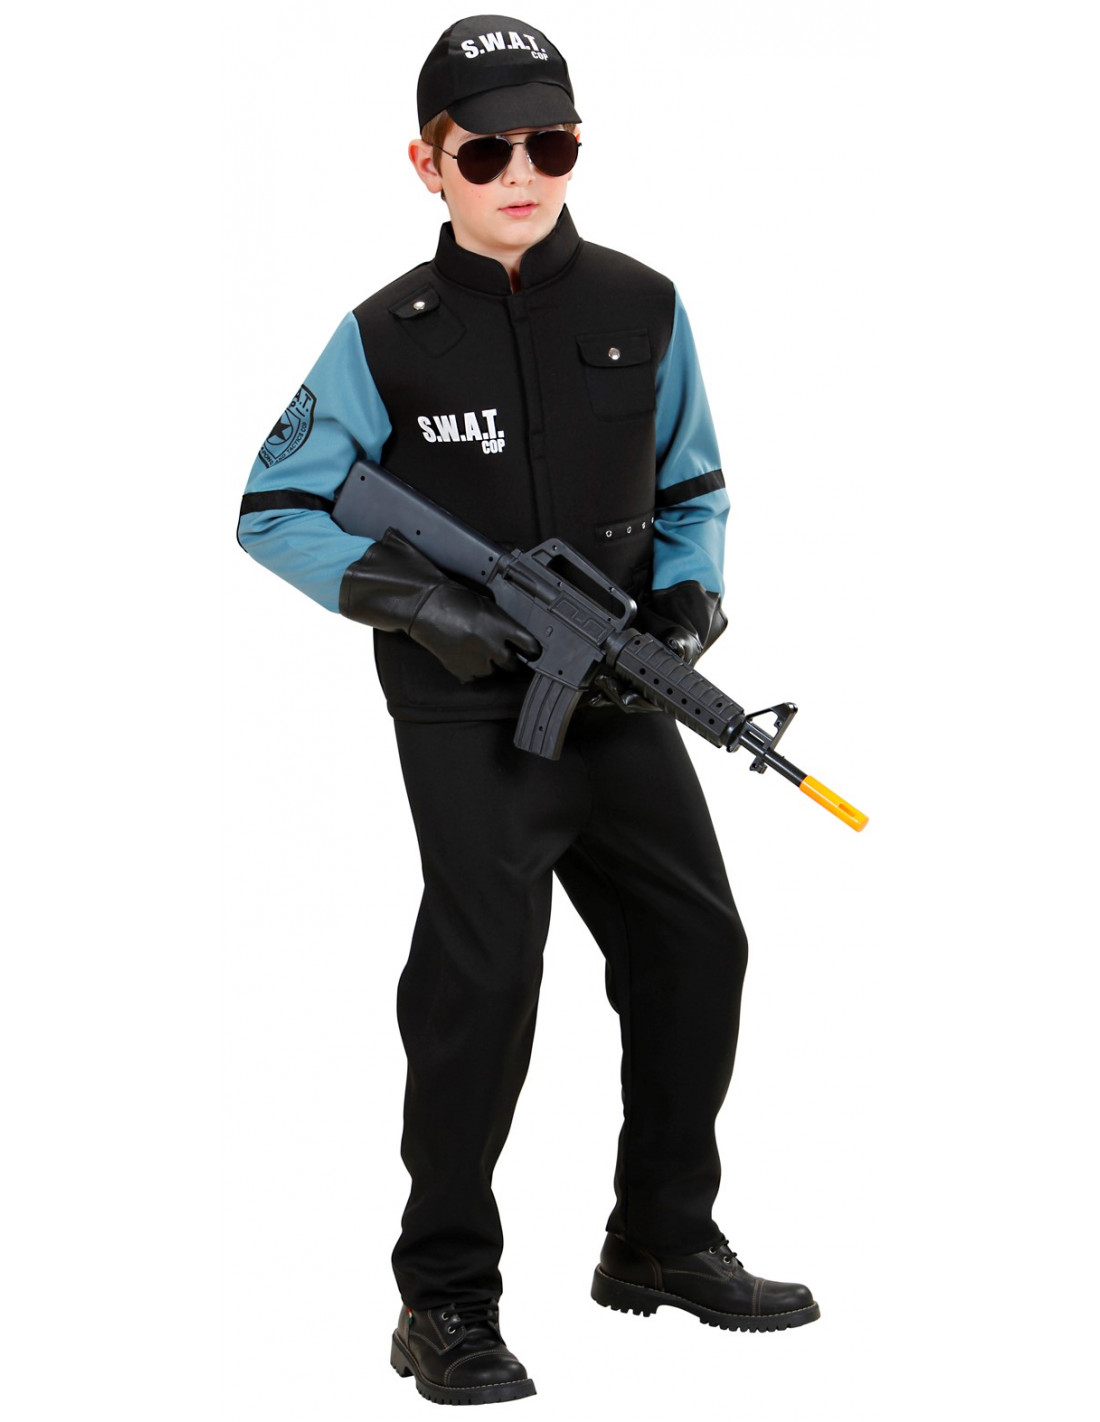 Disfraz oficial de SWAT niño